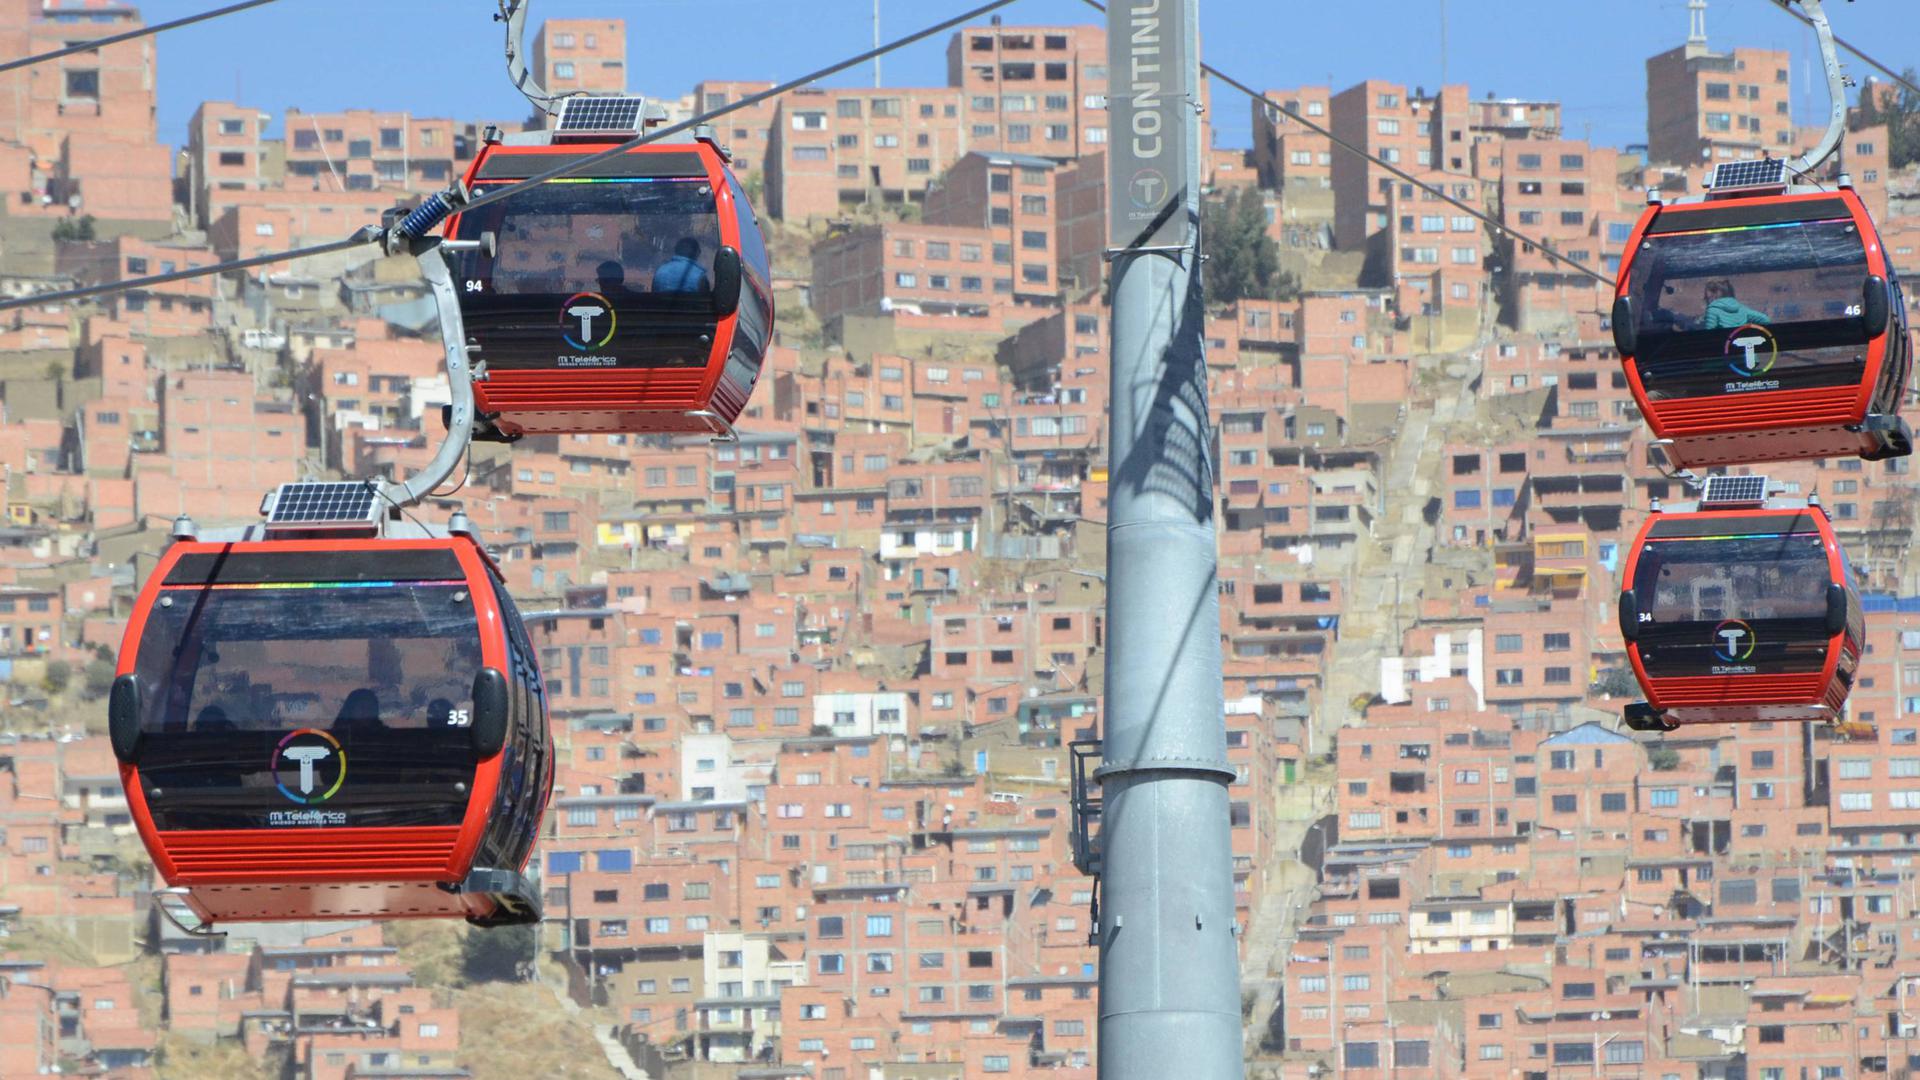 In La Paz, der Hauptstadt Boliviens, gehören Seilbahnen schon länger zum Nahverkehrs-Angebot.